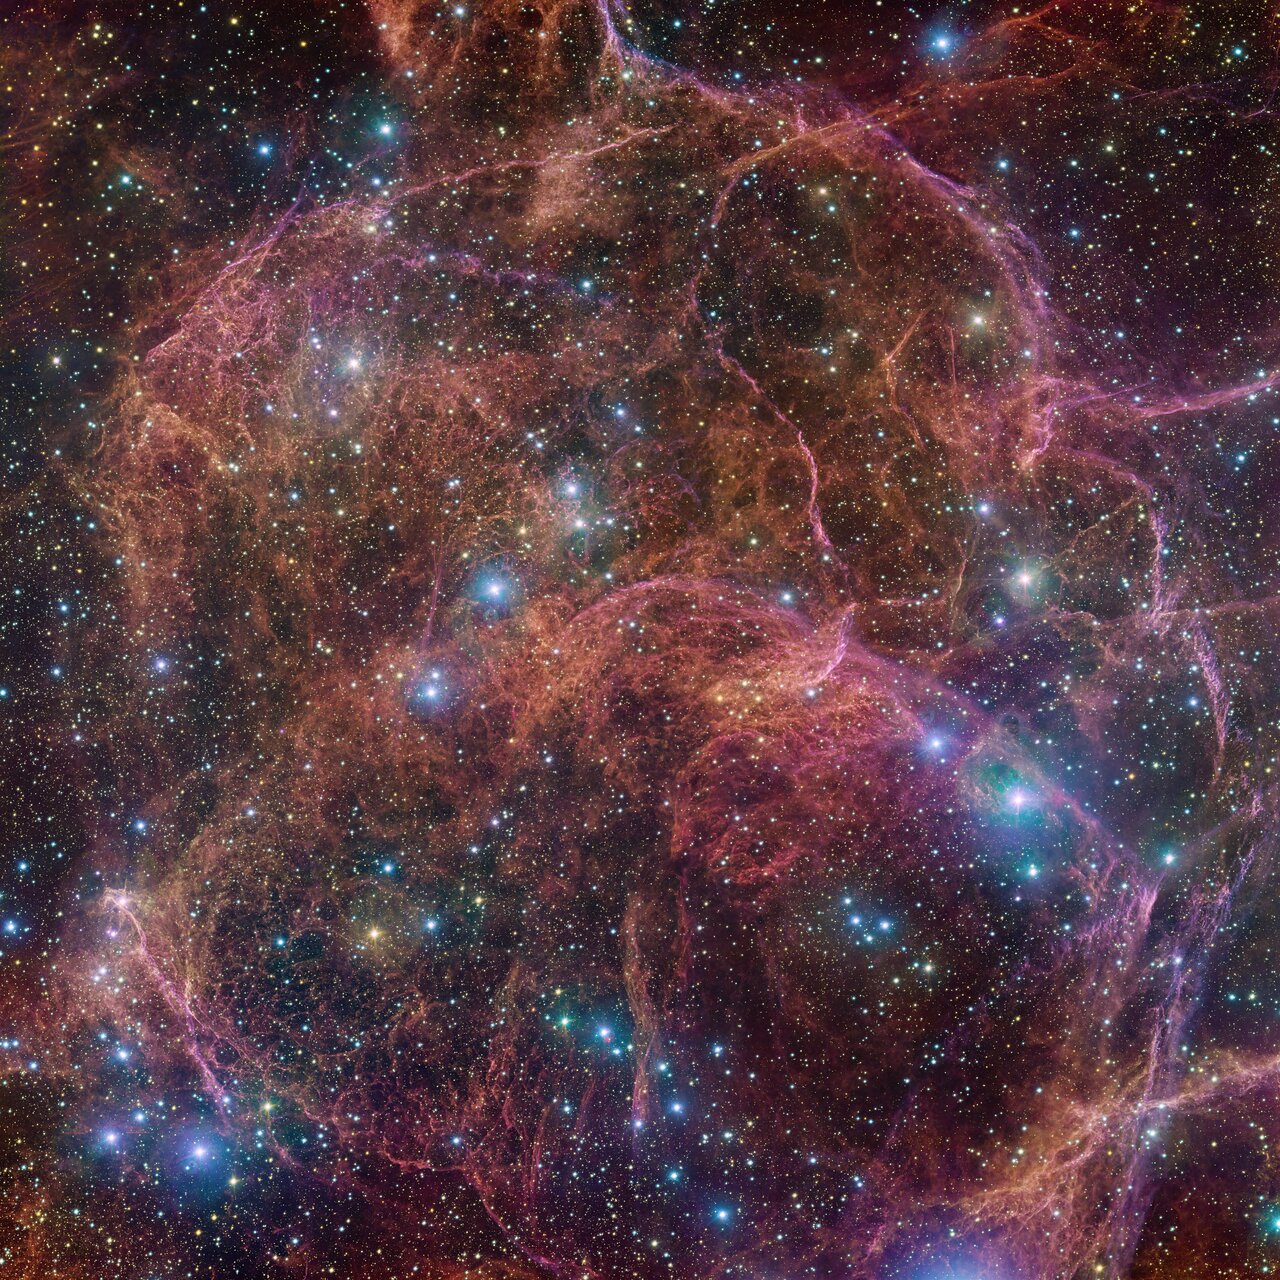 Dieses Bild zeigt einen spektakulären Blick auf die orangefarbenen und rosafarbenen Wolken, die das bilden, was nach dem explosiven Tod eines massereichen Sterns übrig bleibt – der Vela-Supernova-Überrest.  Dieses detaillierte Bild besteht aus 554 Millionen Pixeln und ist ein kombiniertes Mosaikbild von Beobachtungen, die mit der 268-Millionen-Pixel-OmegaCAM-Kamera am VLT Survey Telescope aufgenommen wurden, das am Paranal-Observatorium der ESO untergebracht ist.  OmegaCAM kann Bilder durch mehrere Filter aufnehmen, die das Teleskop jeweils das emittierte Licht in einer bestimmten Farbe sehen lassen.  Um dieses Bild aufzunehmen, wurden vier Filter verwendet, die hier durch eine Kombination aus Magenta, Blau, Grün und Rot dargestellt werden.  Das Ergebnis ist eine äußerst detaillierte und atemberaubende Ansicht sowohl der gasförmigen Filamente im Überrest als auch der hellblauen Sterne im Vordergrund, die dem Bild Glanz verleihen.